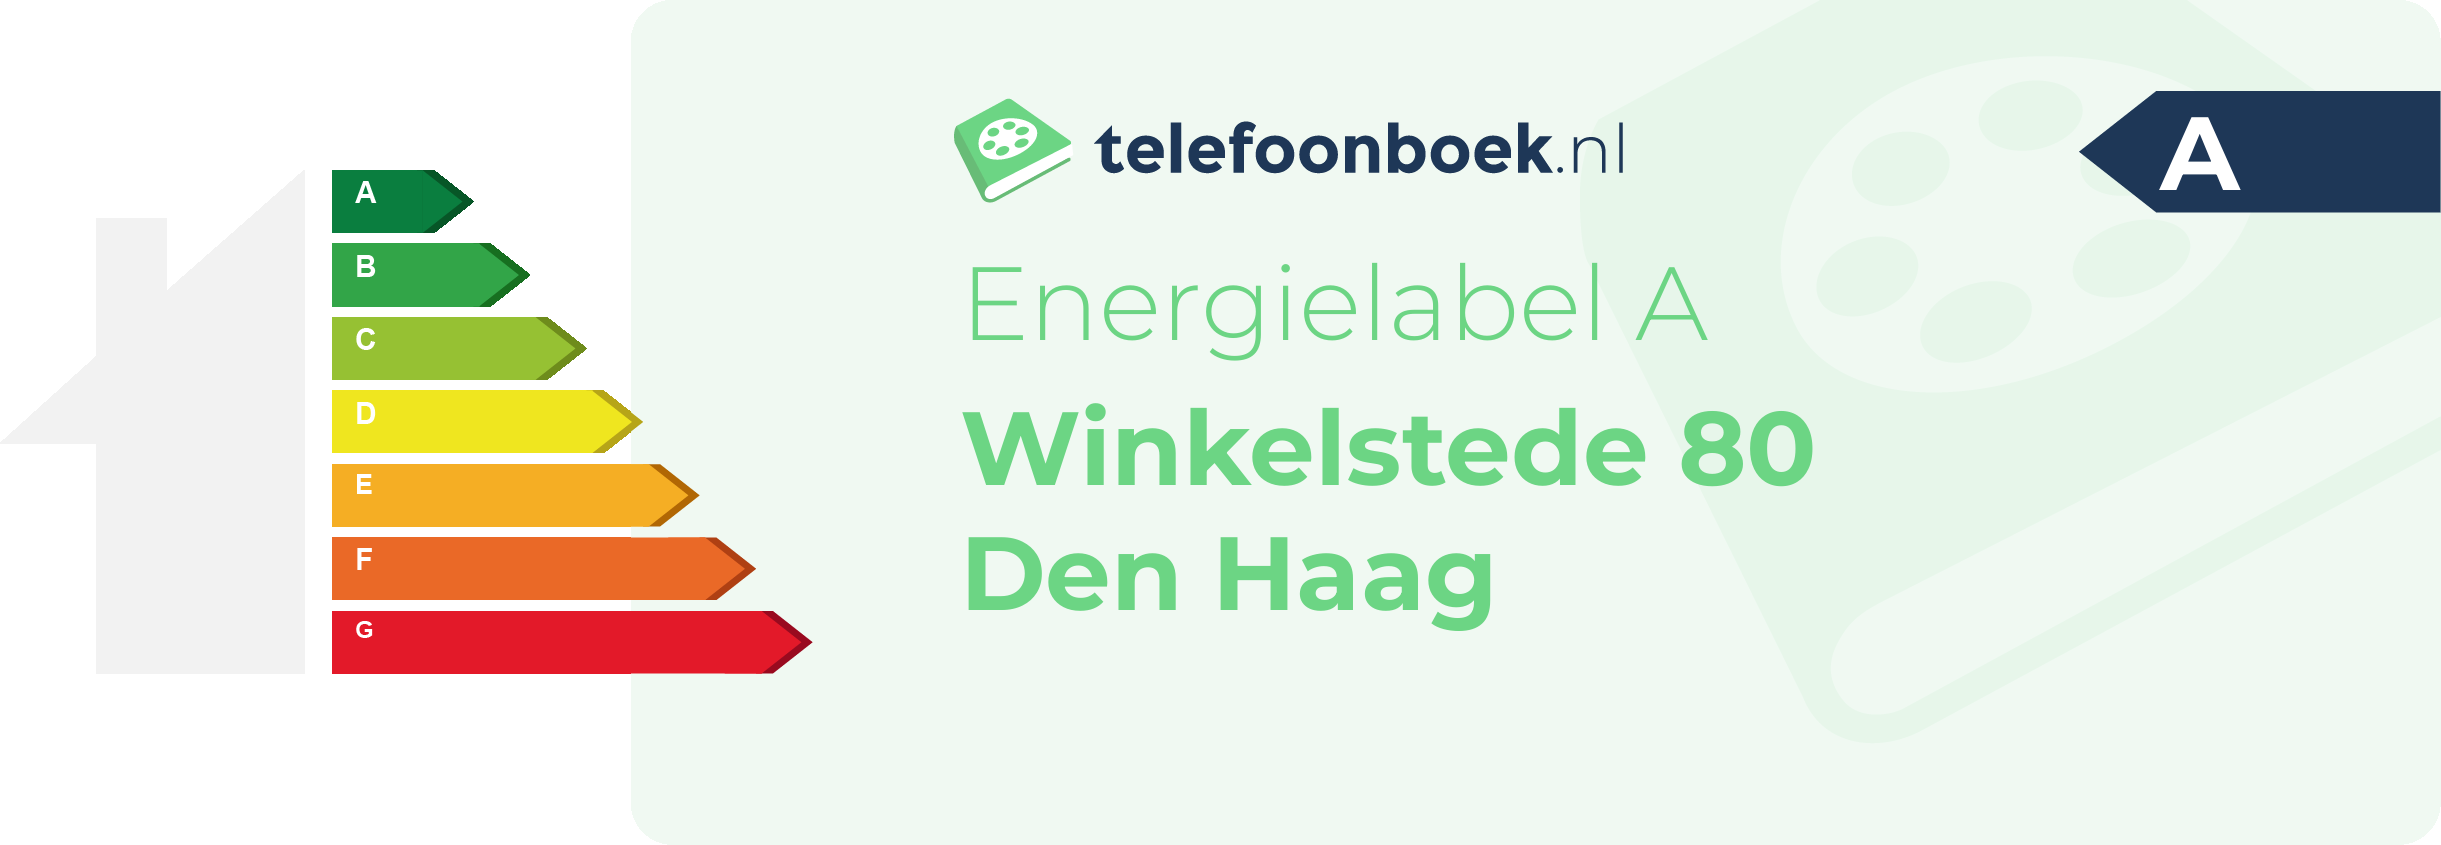 Energielabel Winkelstede 80 Den Haag